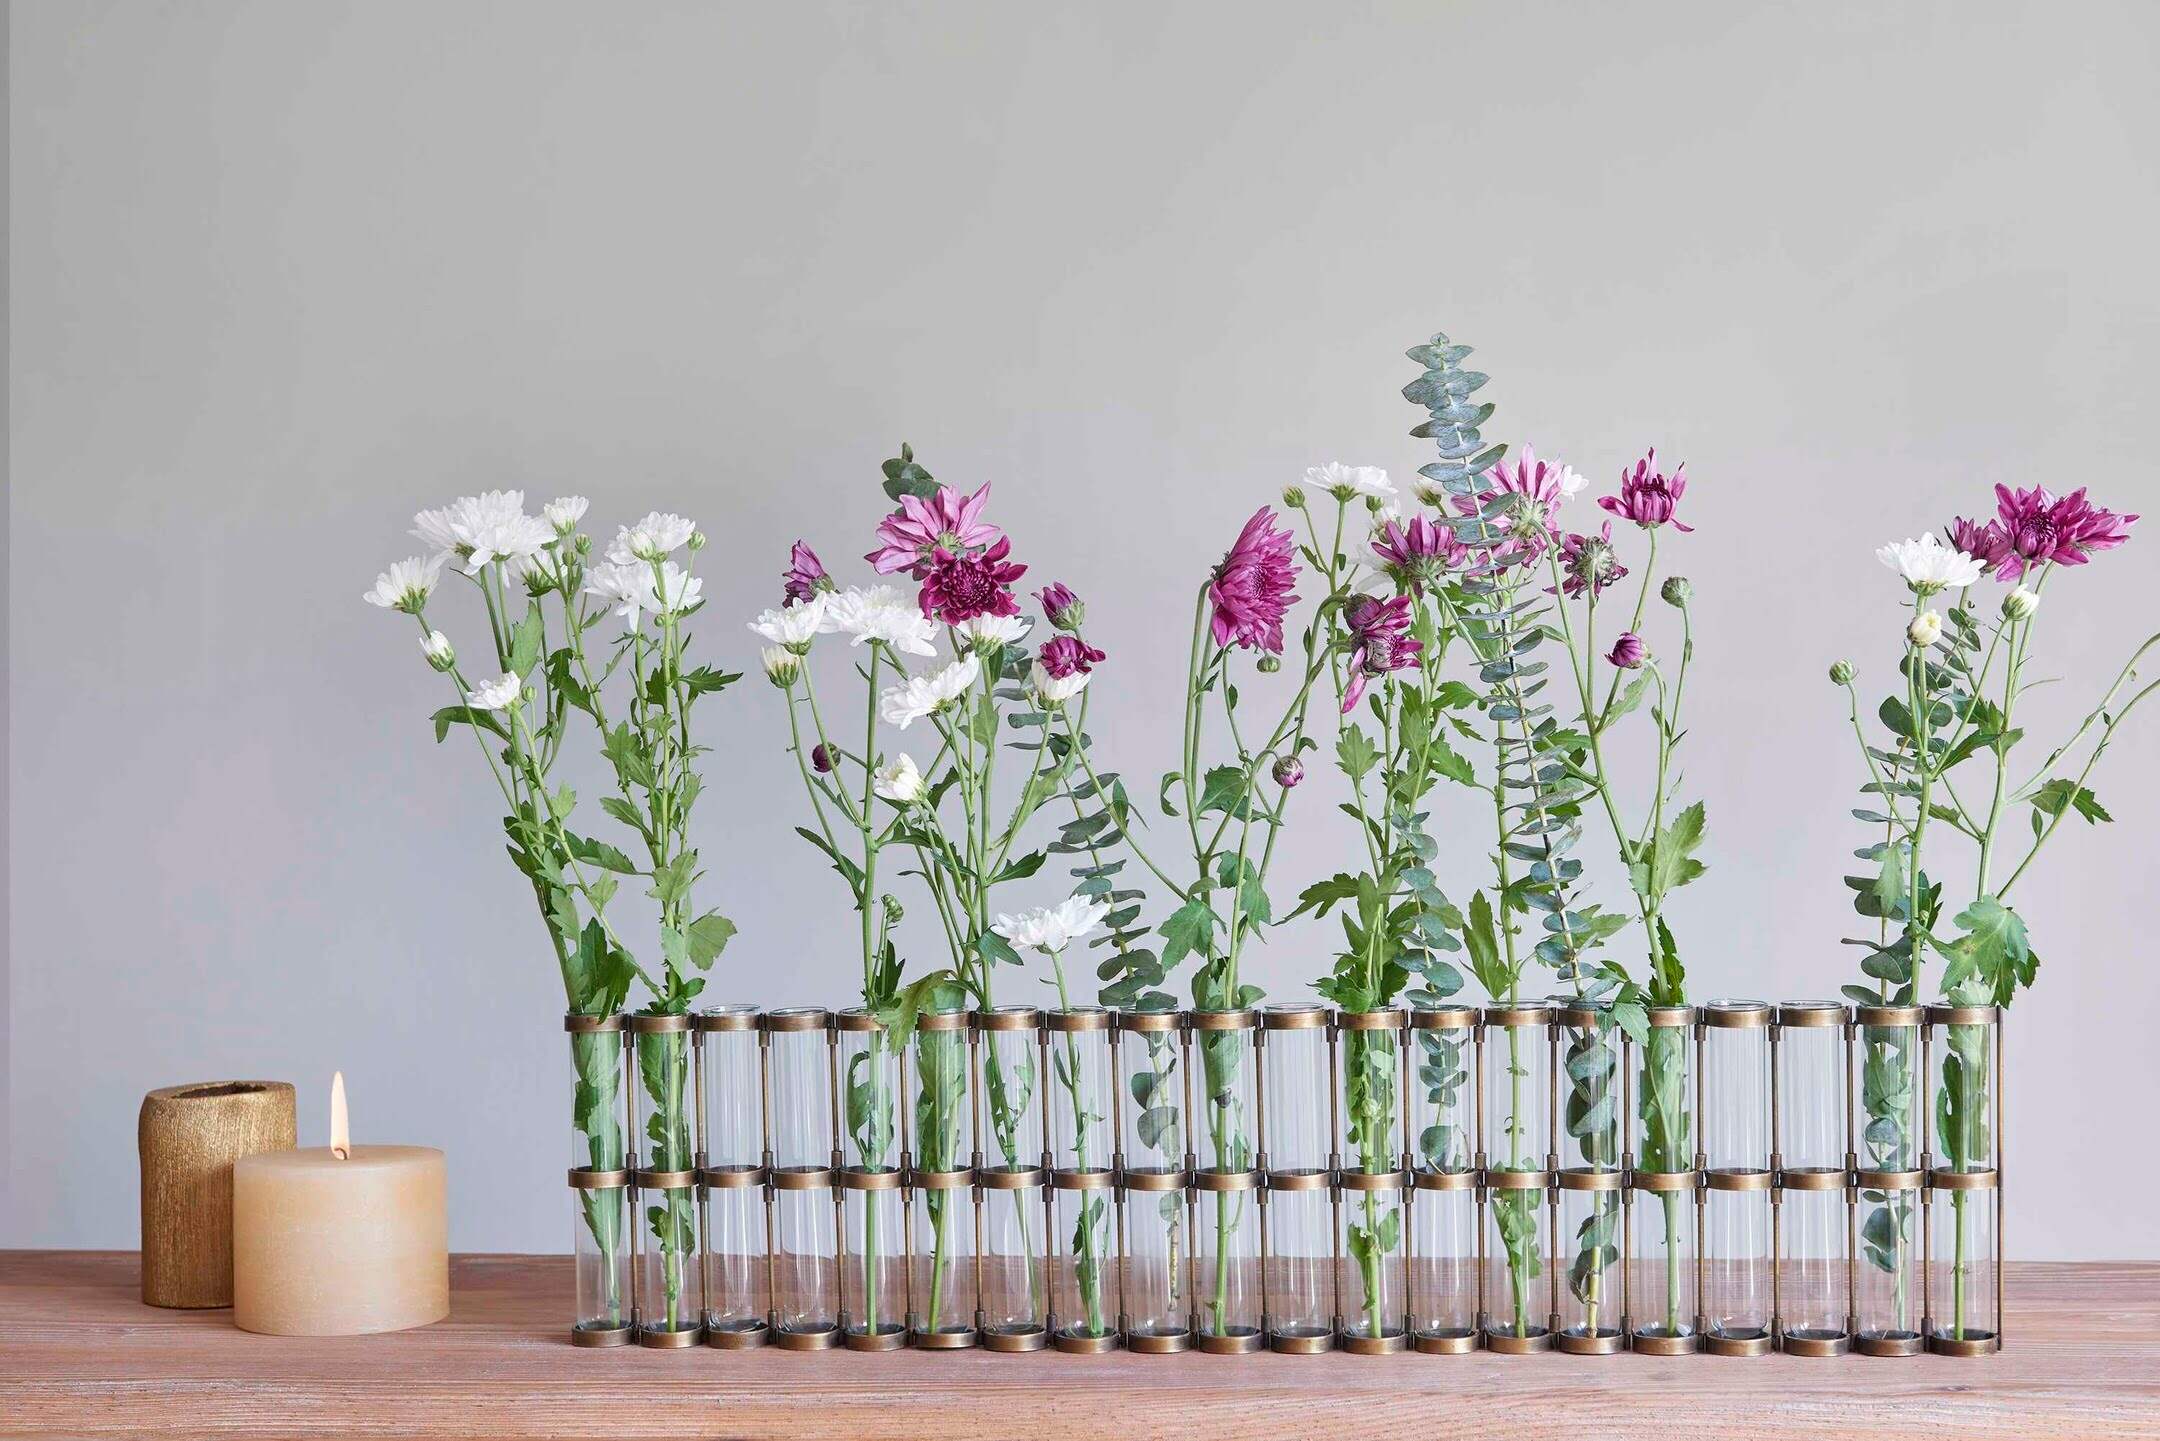 Hinged Flower Vase Glass Vase Tube Creative Plant Holder For Living Room  Office